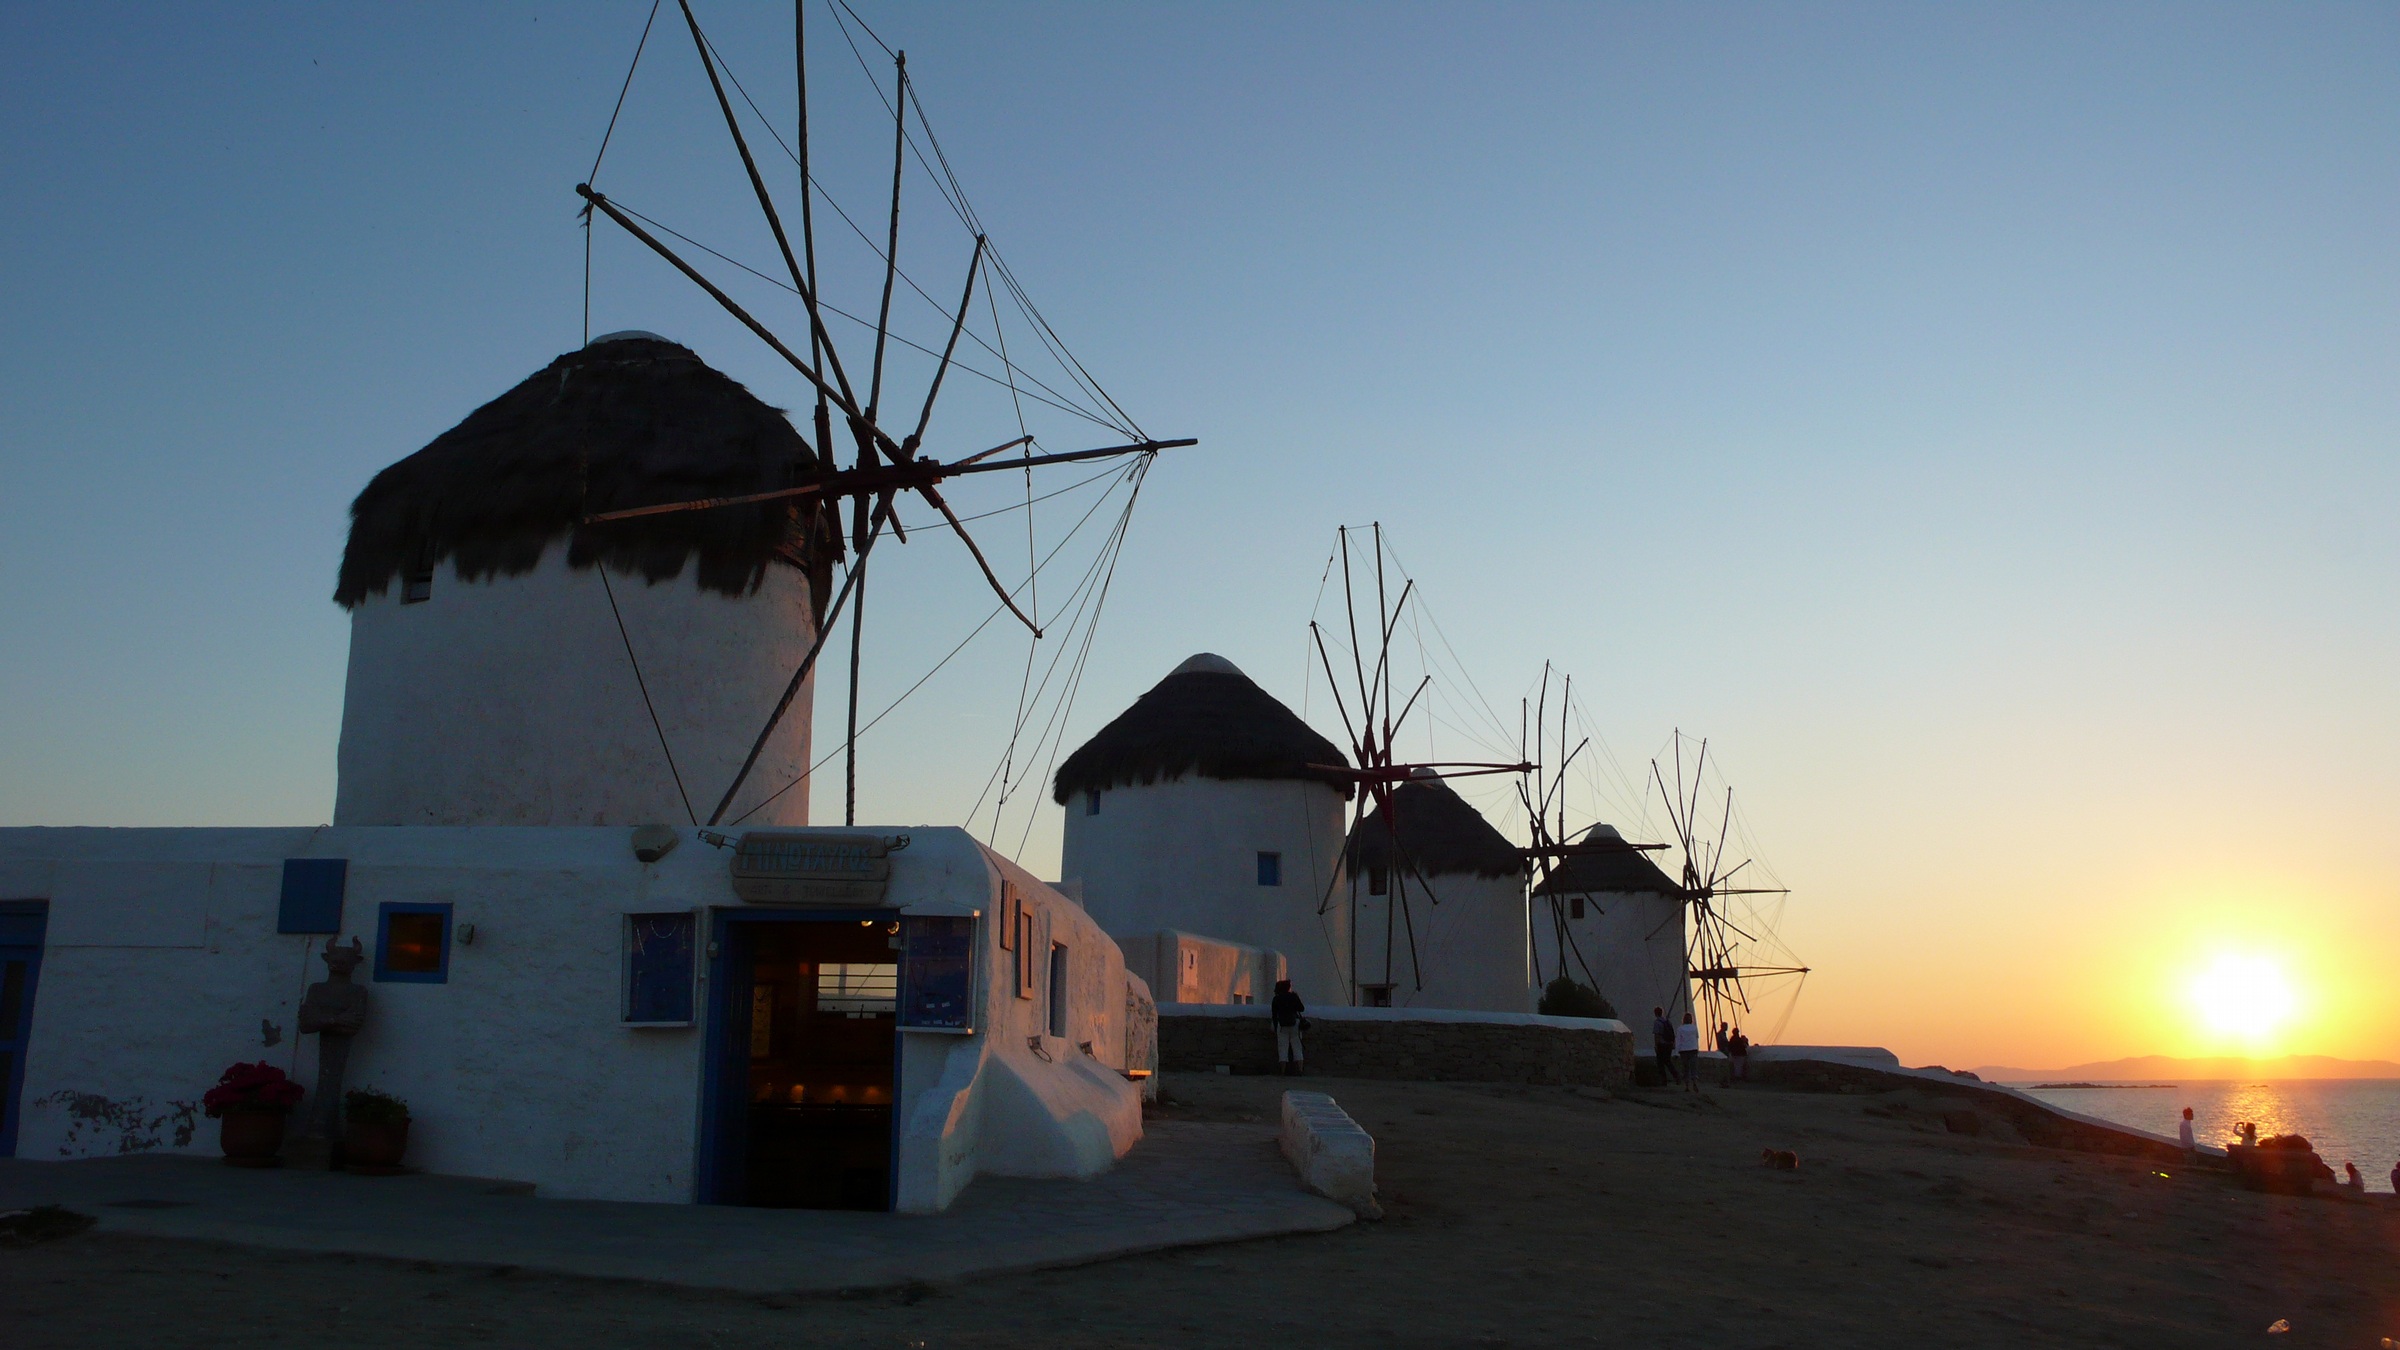 Los famosos molinos de viento recortando el horizonte al anochecer